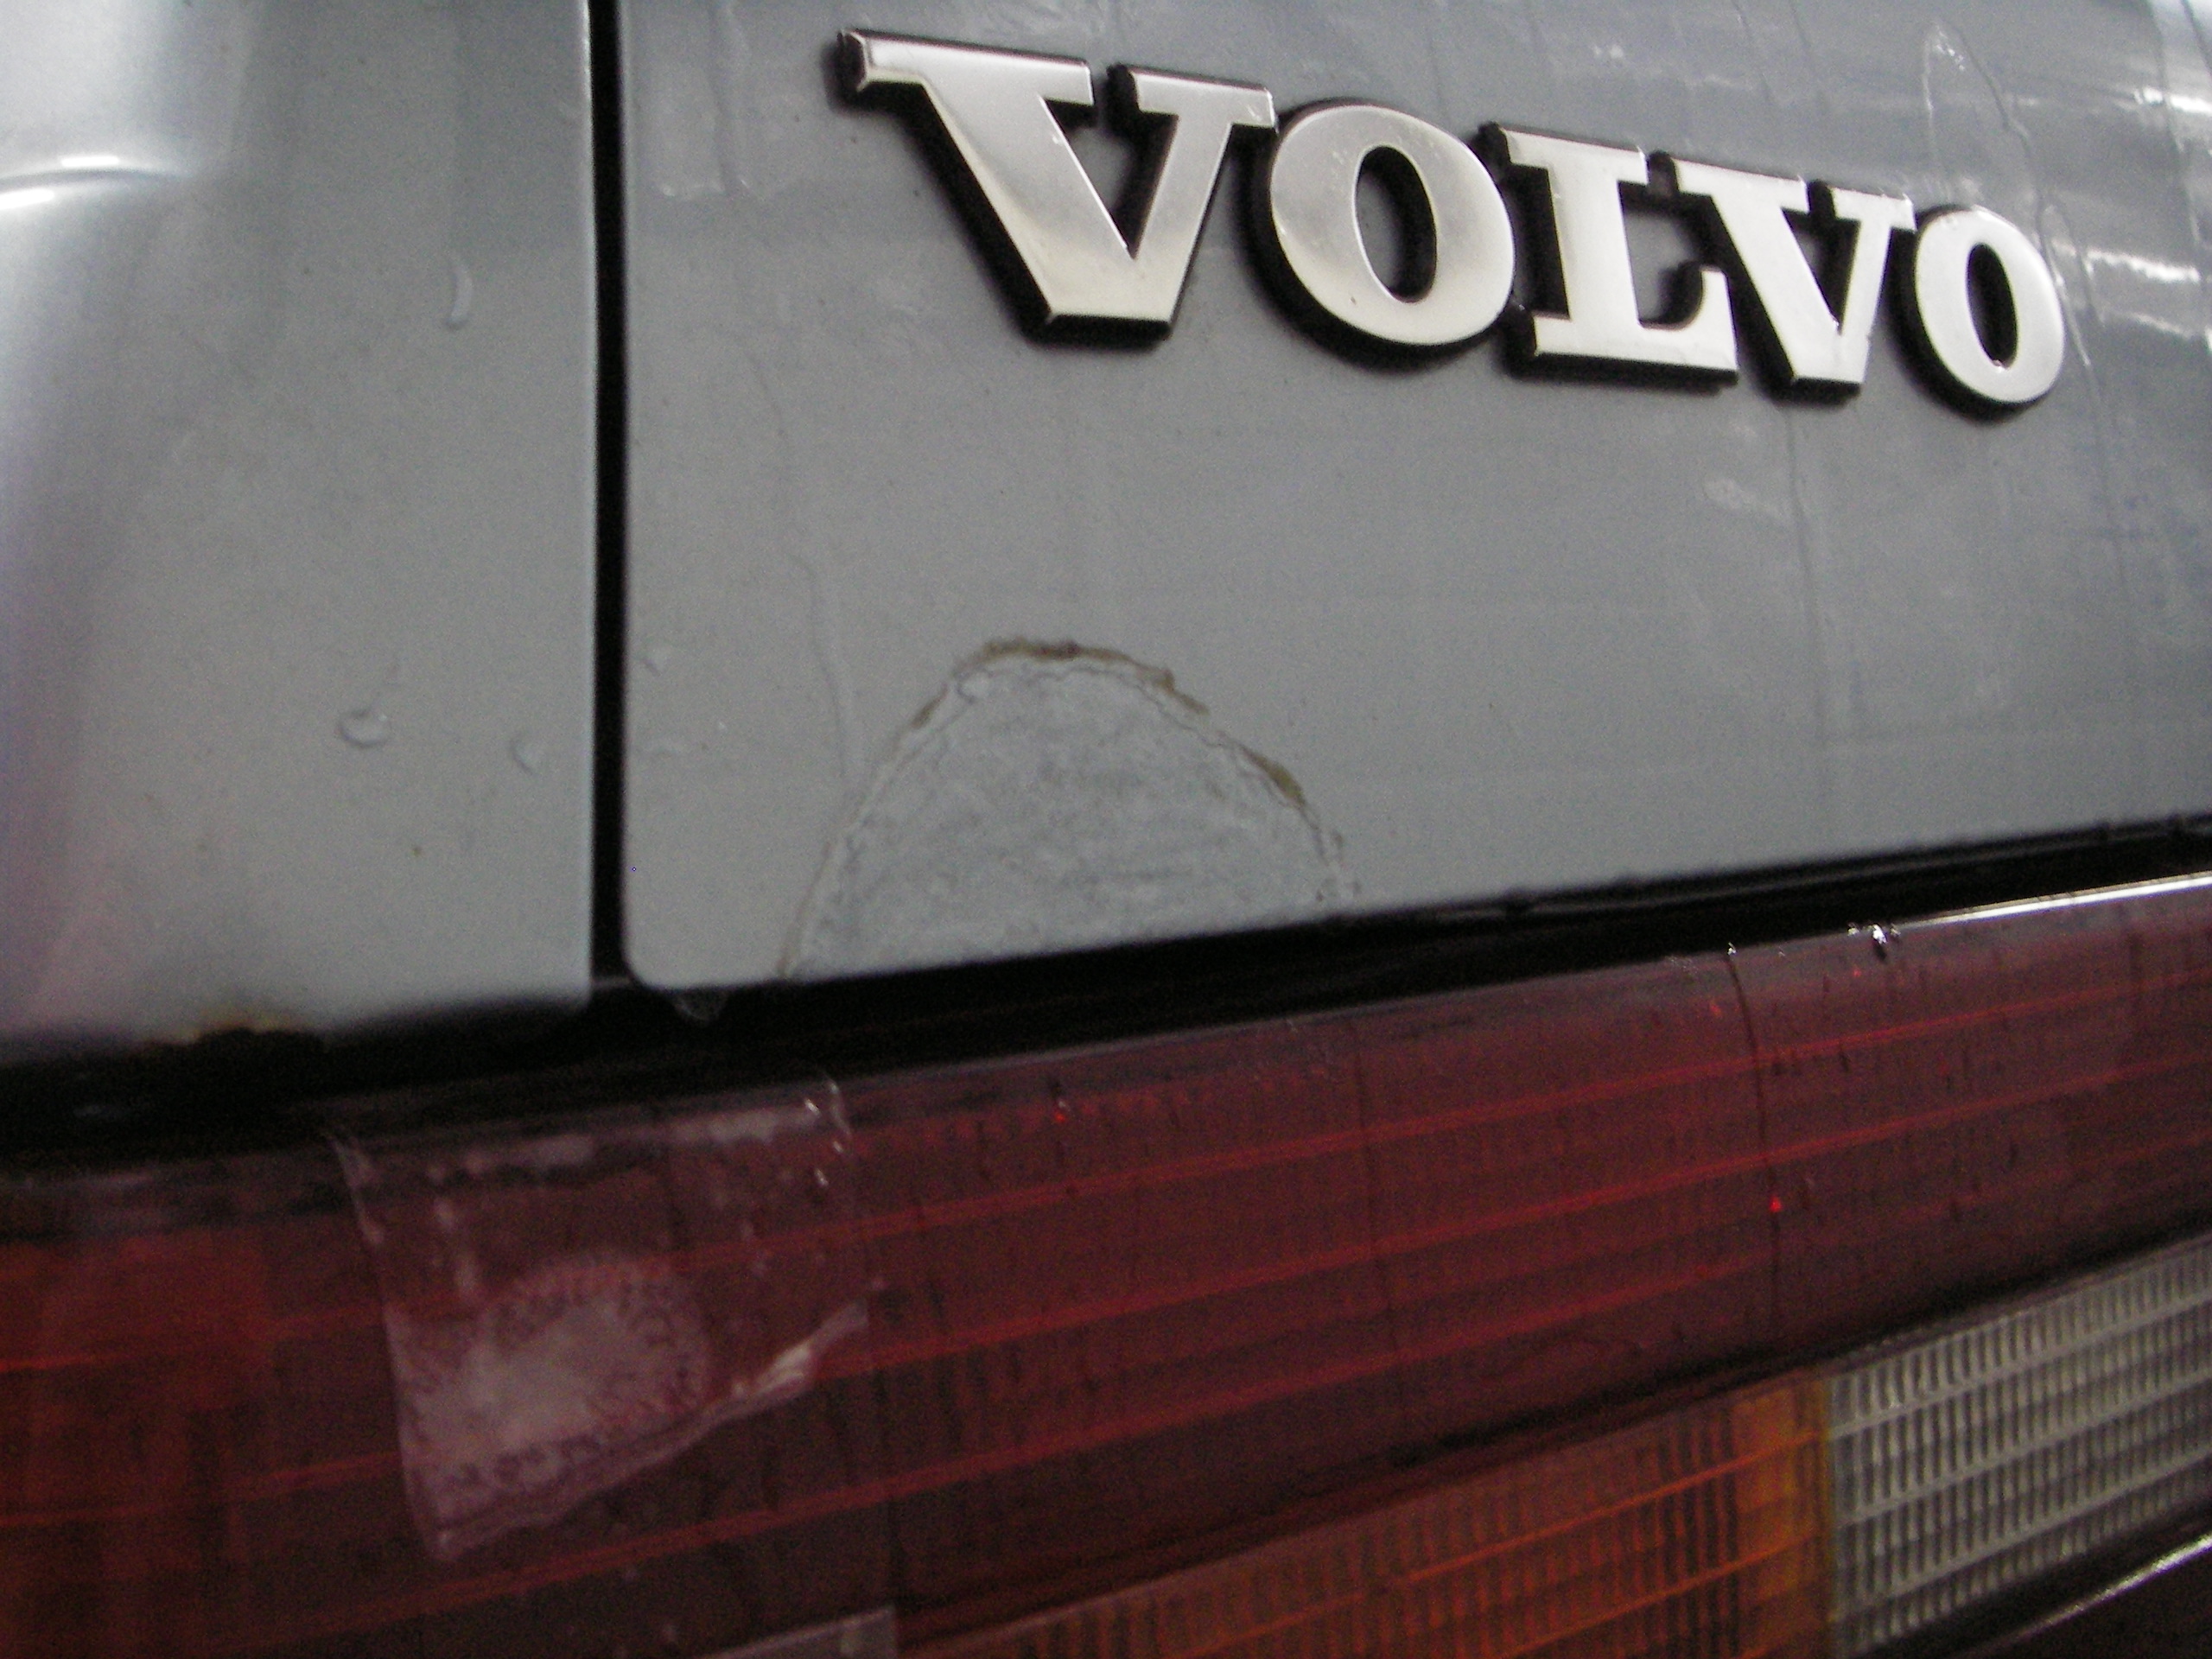 UJ-838 Volvo 740GL 1990 2.0i 025